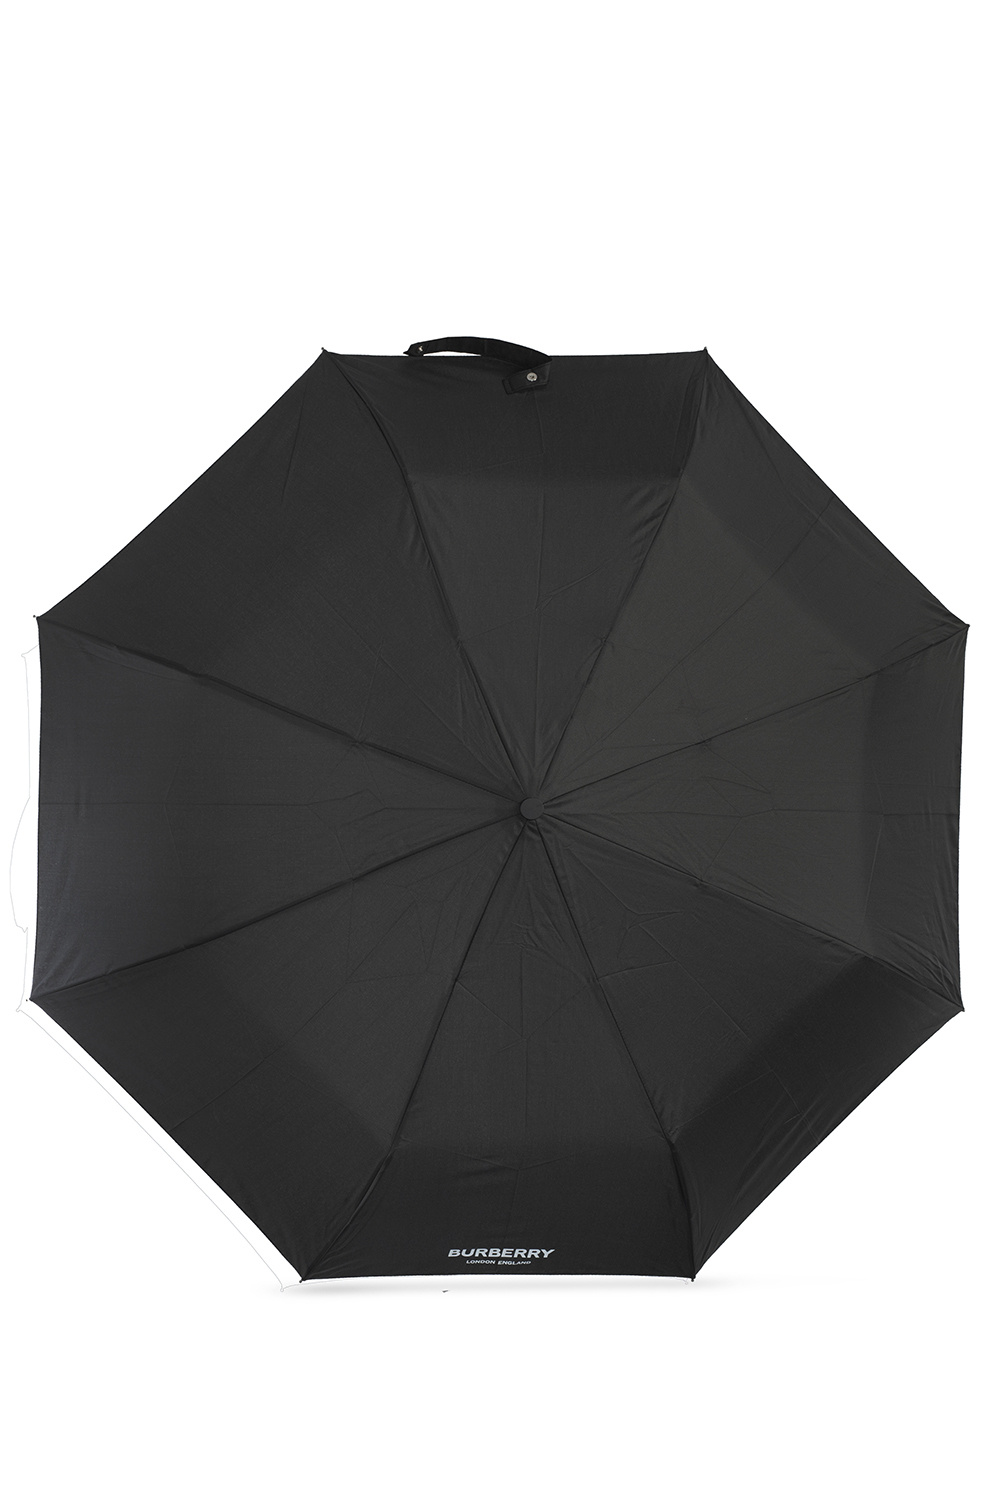 IetpShops | BURBERRY Occhiali da sole 'JUDE' oro nero | Burberry Folding  umbrella with logo | Men's Accessorie